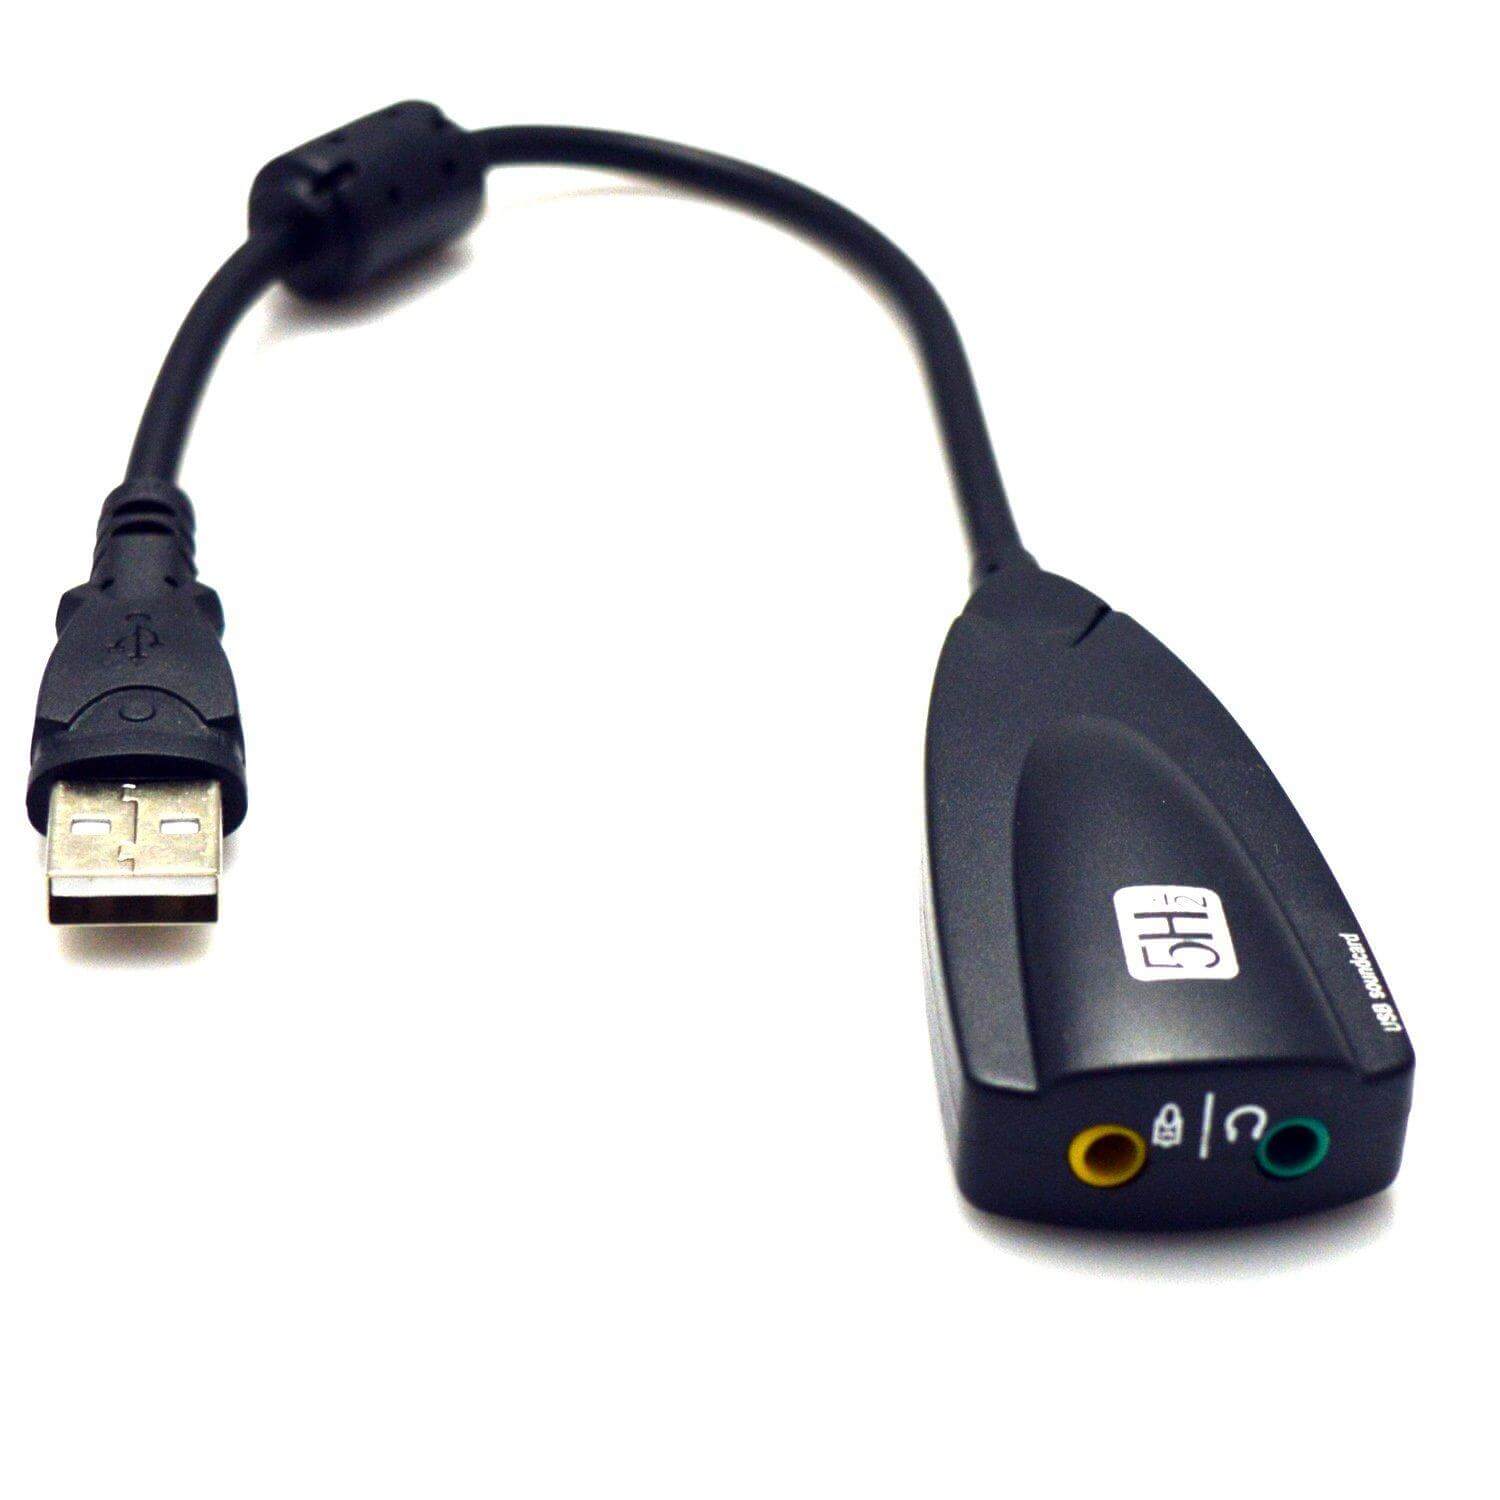 USB SOUND 5HV2 chuyển từ USB ra cổng âm thanh 3.5